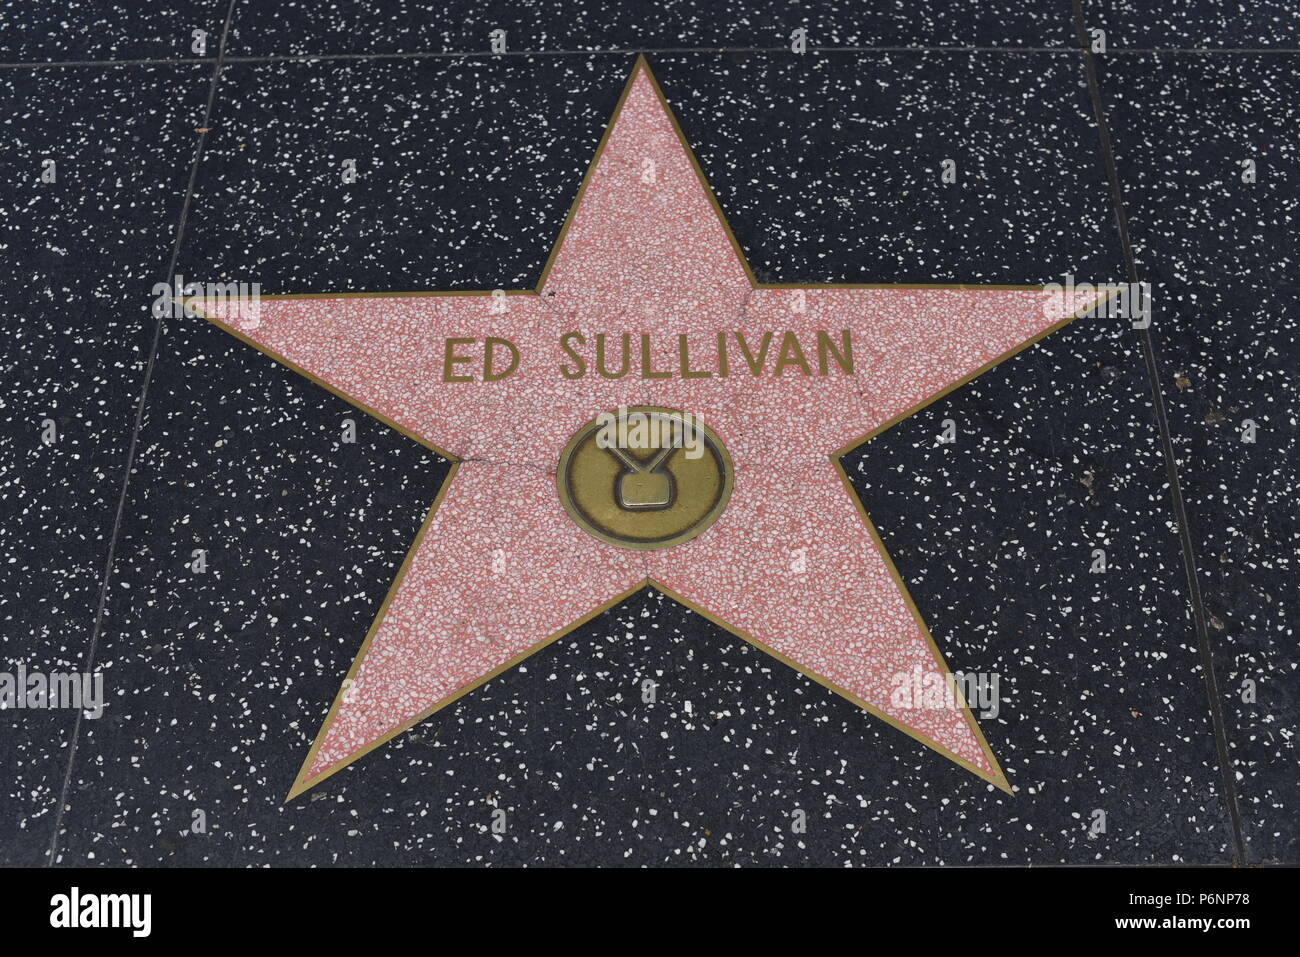 HOLLYWOOD, CA - 29 Giugno: Ed Sullivan stella sulla Hollywood Walk of Fame in Hollywood, la California il 29 giugno 2018. Foto Stock